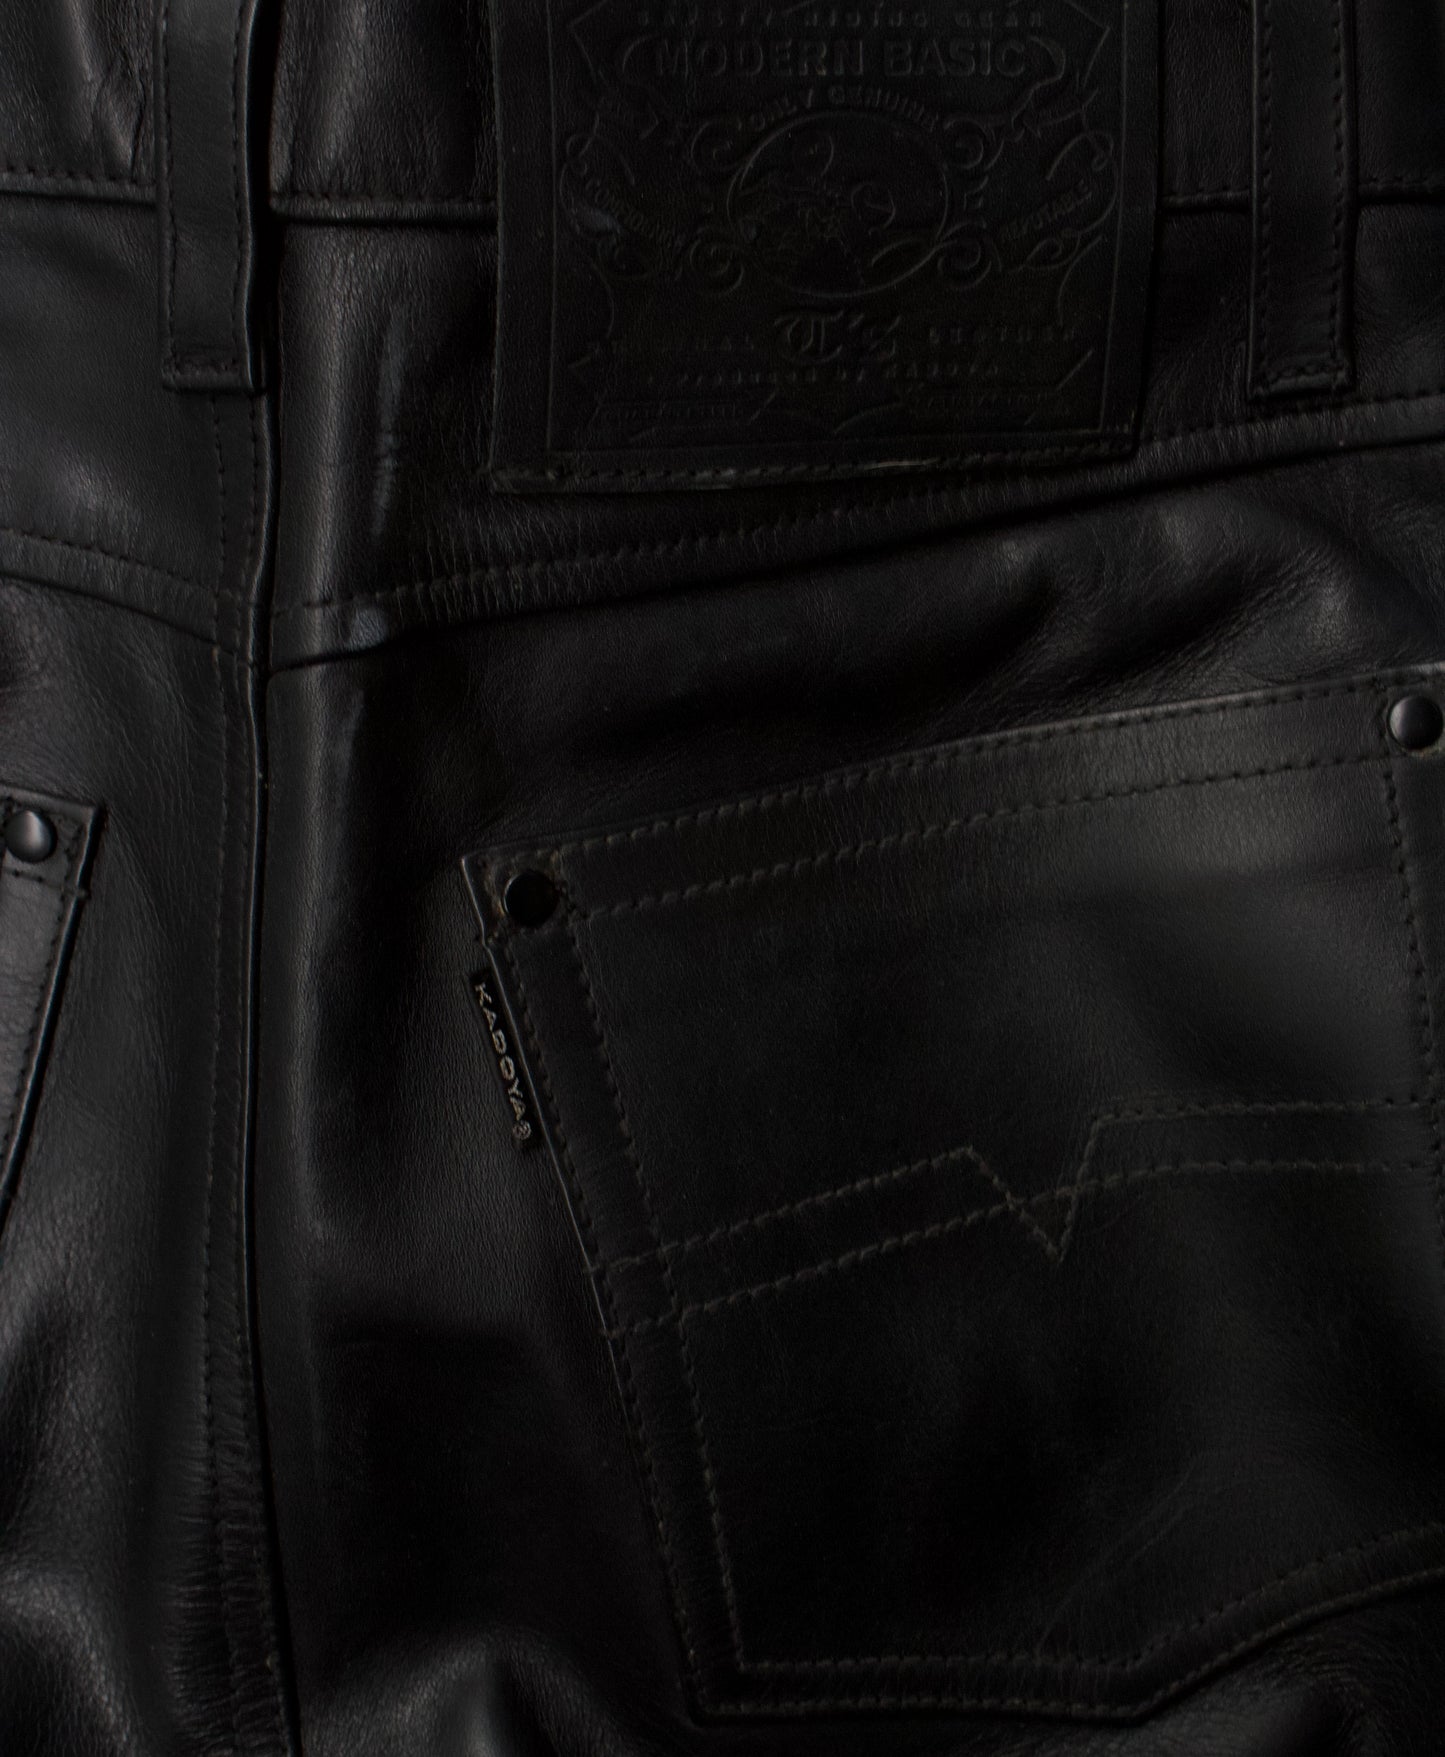 Kadoya K’s Leather 00s Bootcut Leather Motorcycle Pants